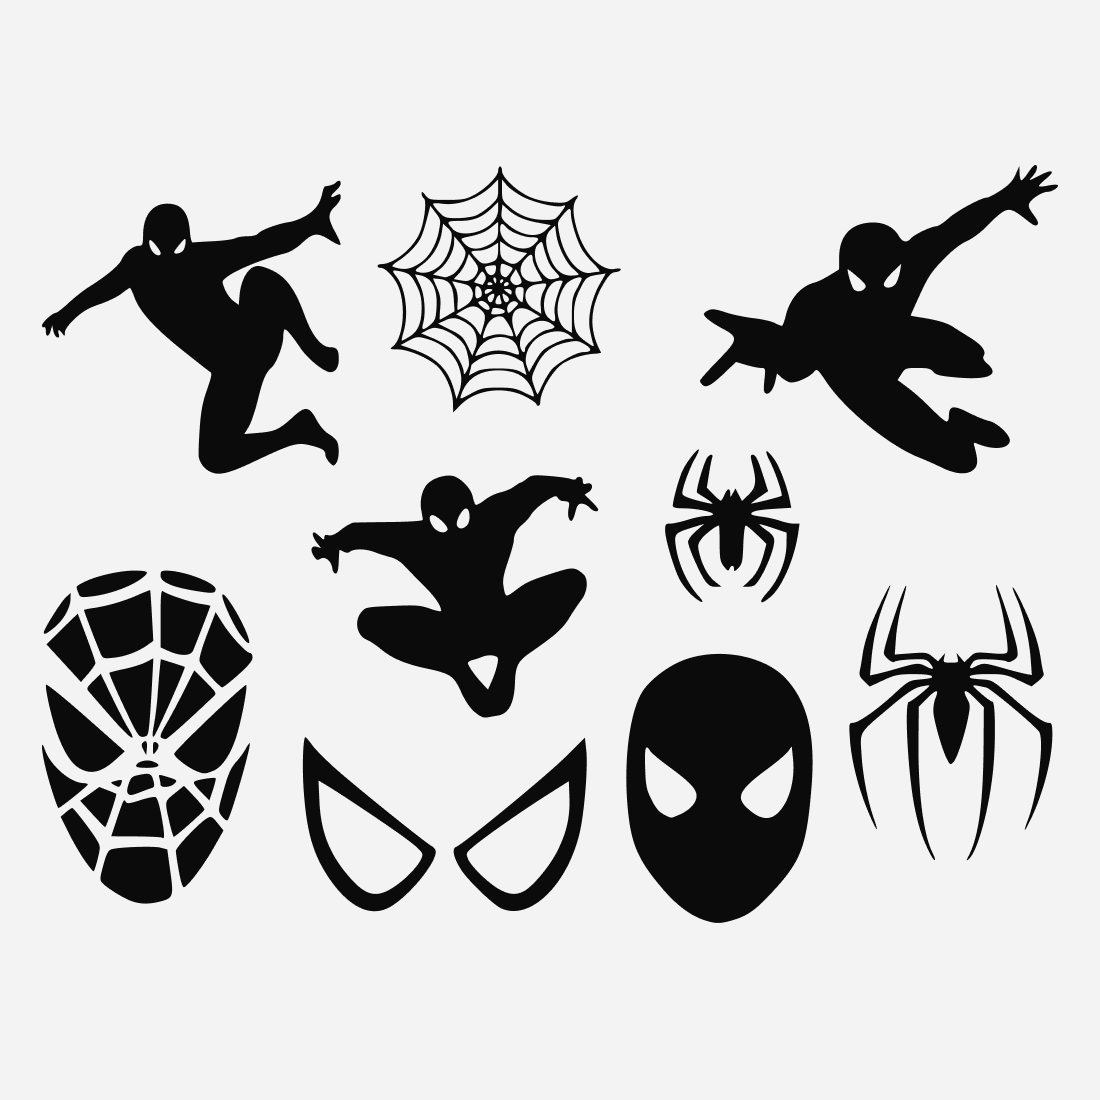 Spiderman v1 SVG bundle.